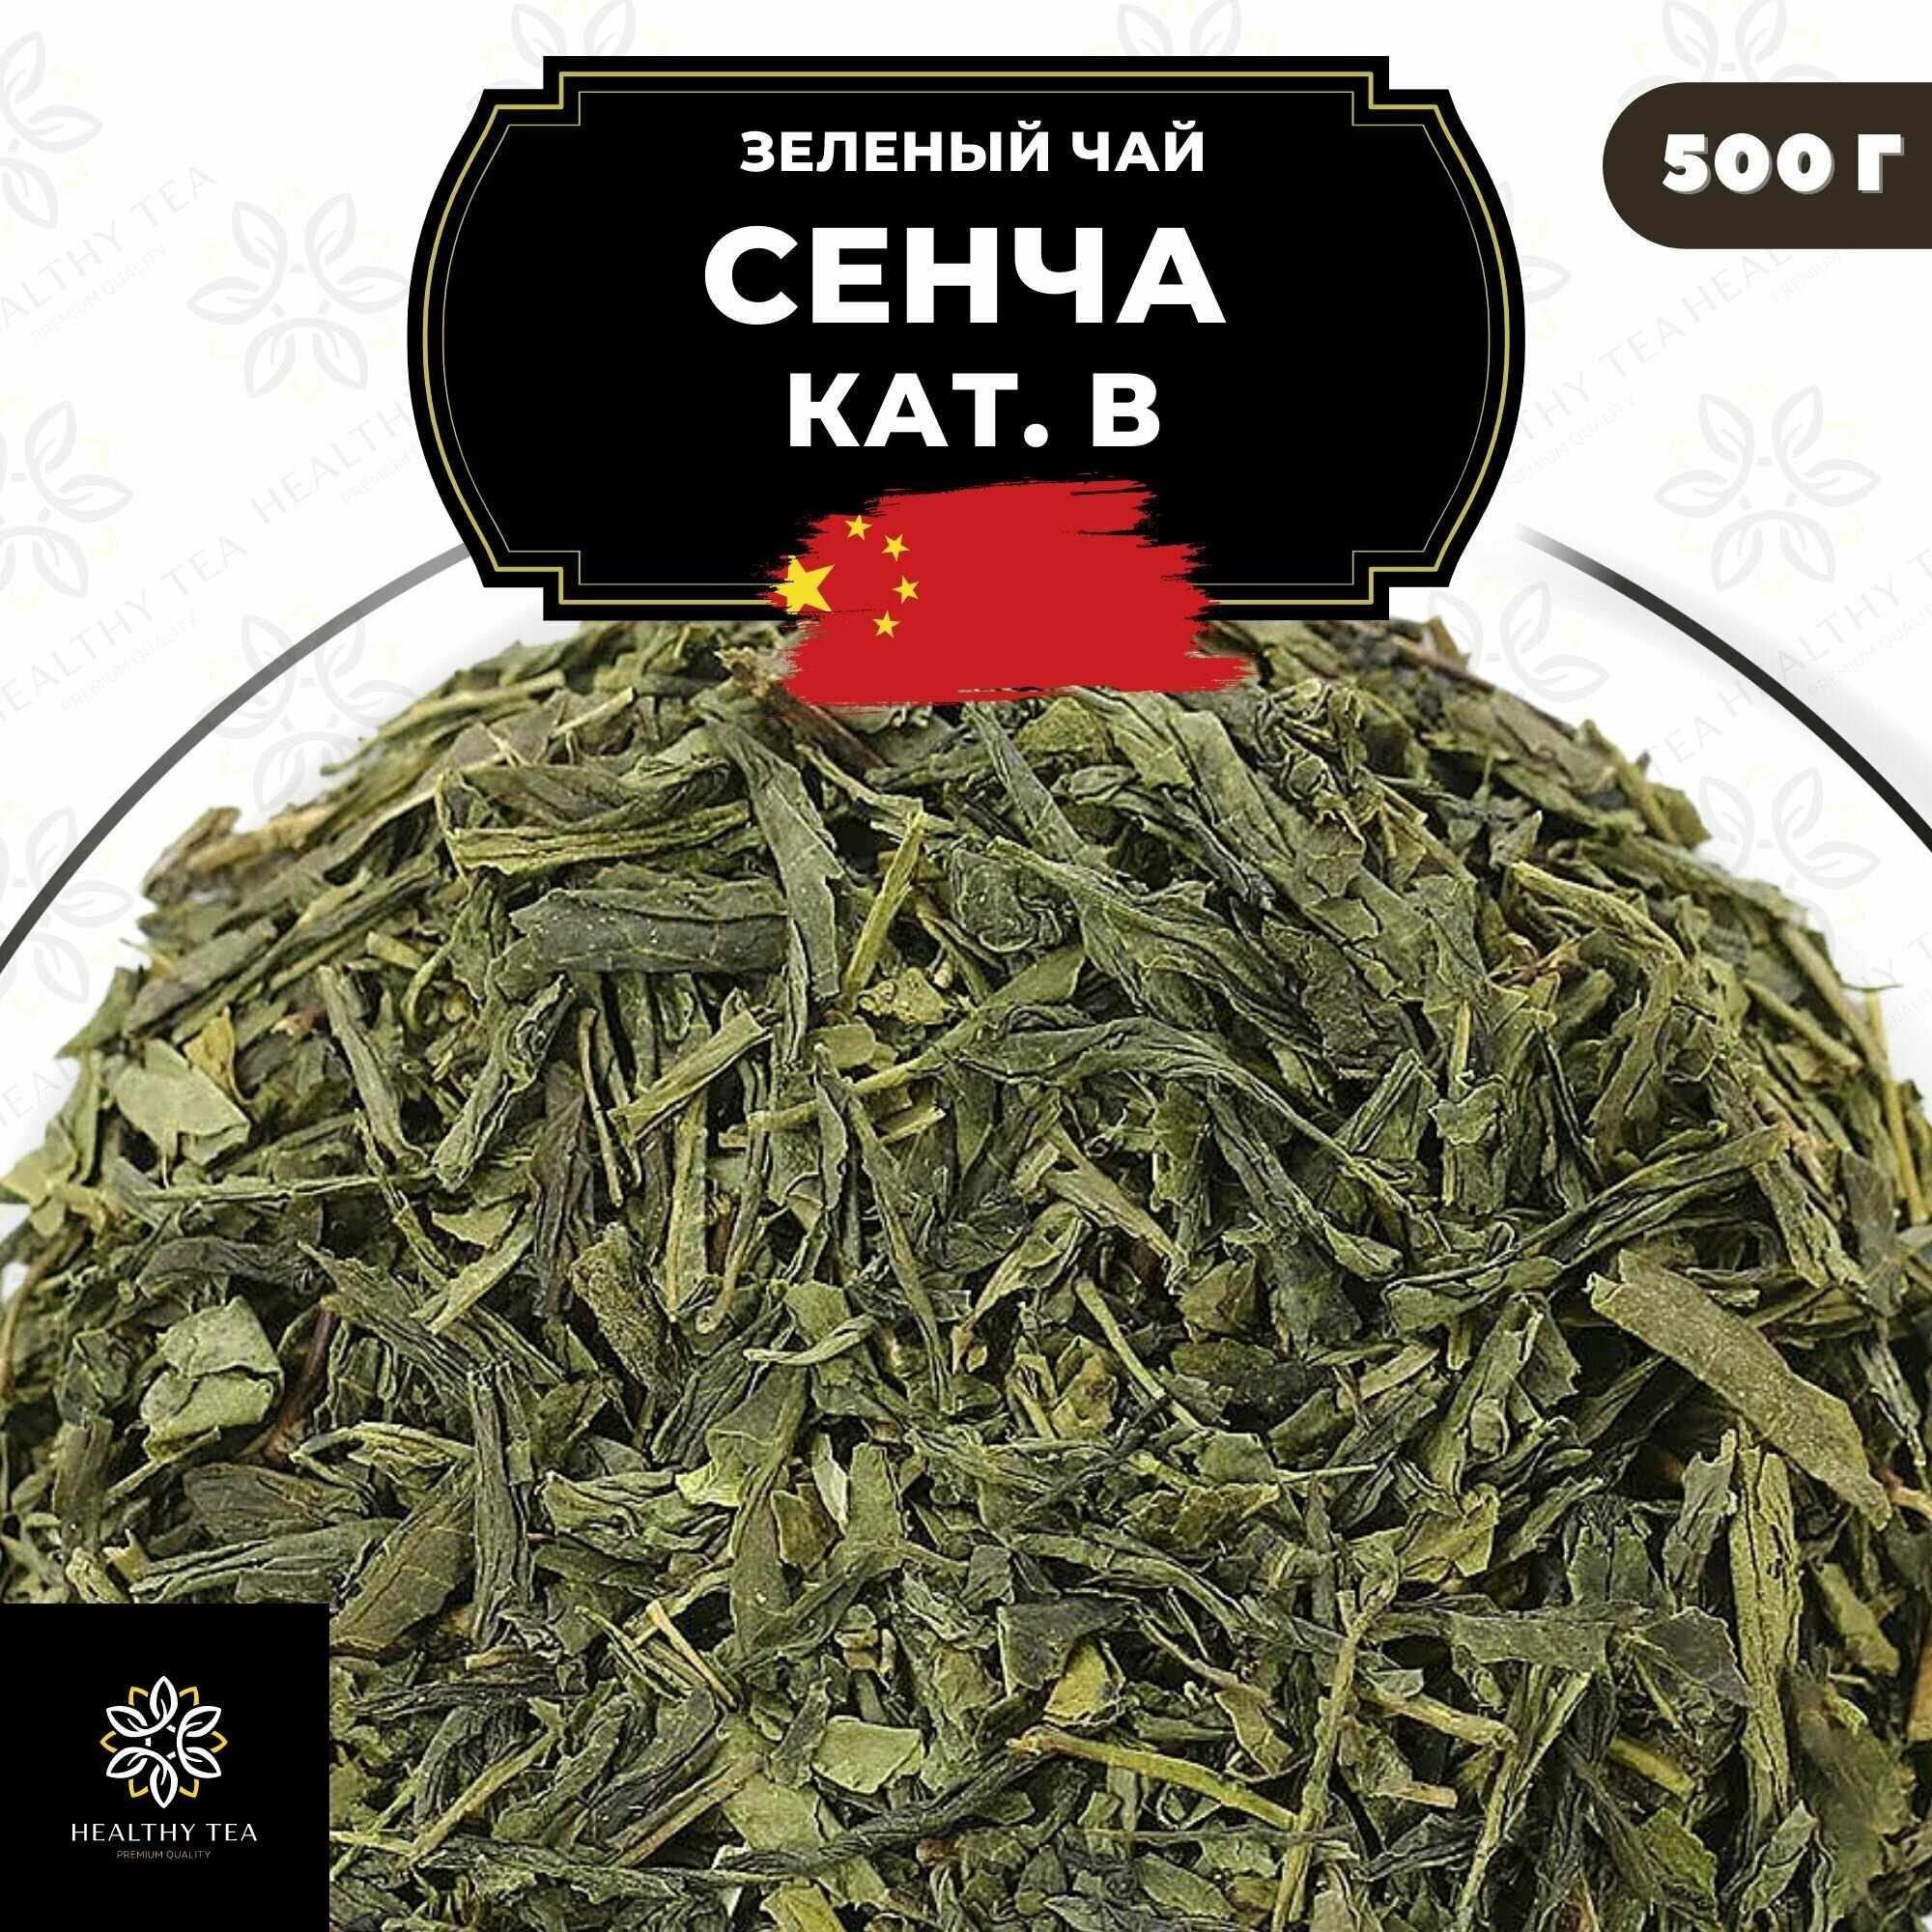 Китайский зеленый чай без добавок Сенча (кат. B) Полезный чай / HEALTHY TEA, 500 г